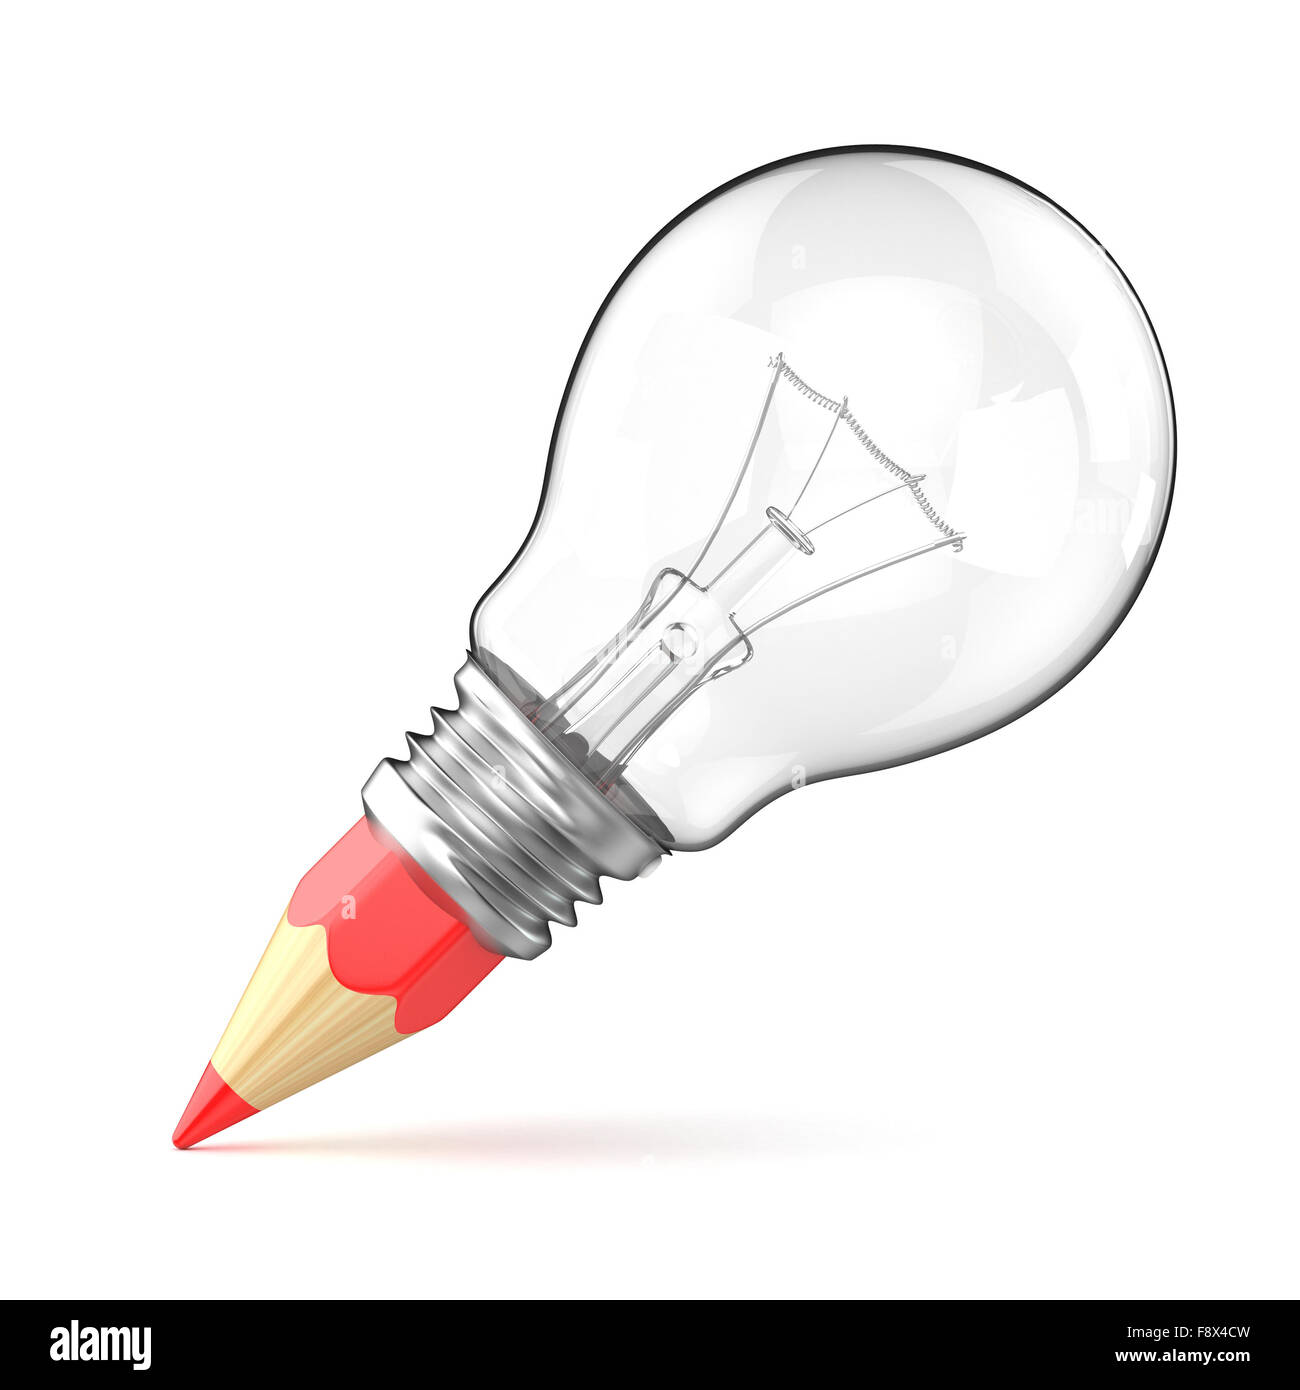 Ampoule crayon comme concept créatif. Rendu 3D illustration isolé sur fond blanc Banque D'Images